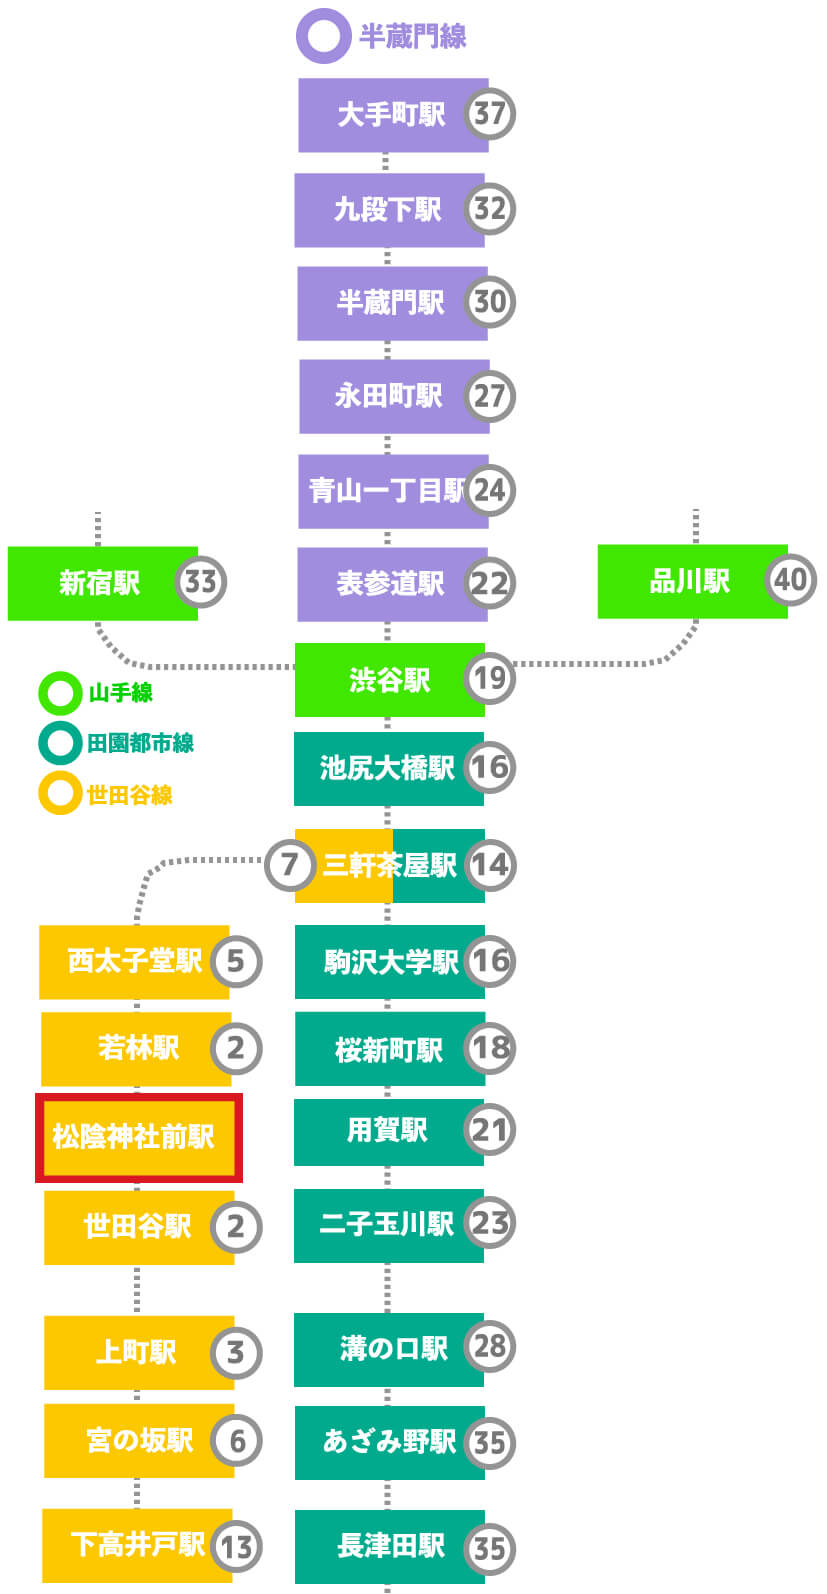 この画像は松陰神社前駅から田園都市線各駅までの乗車時間、半蔵門線への乗車時間などをまとめた表です。